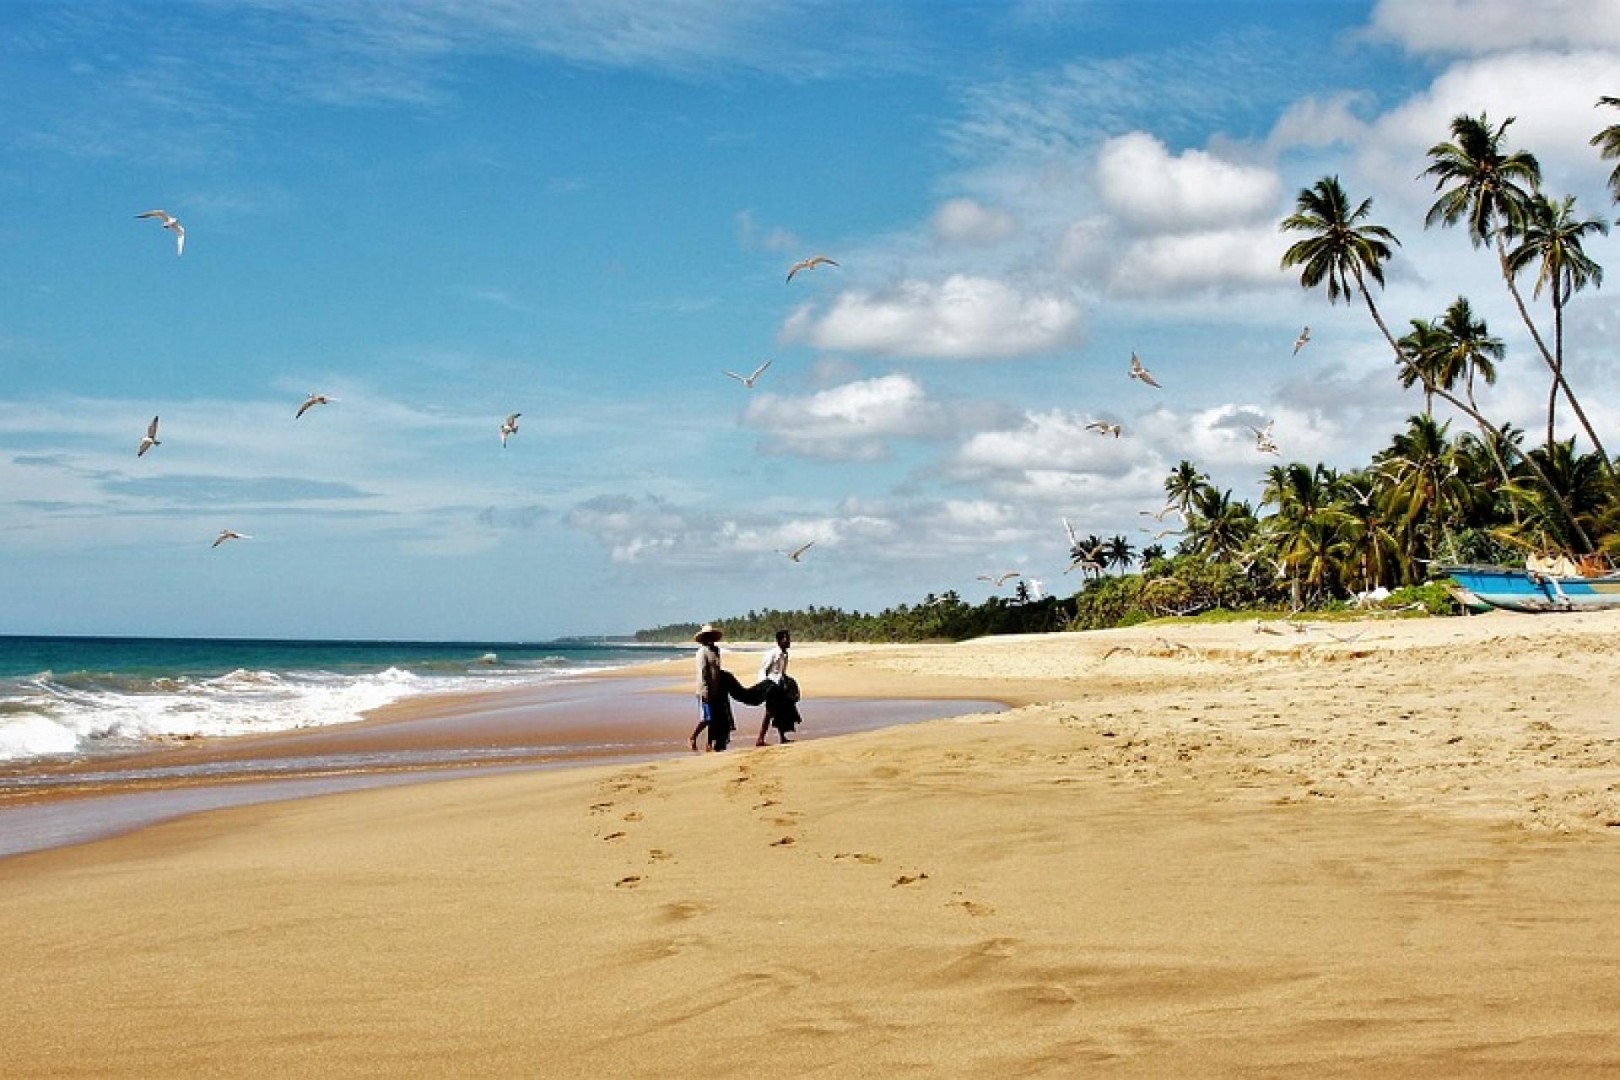 Пляжи Шри-Ланки в феврале поистине прекрасны. Переходный период от лучшего времени года к сезону погодных перемен.